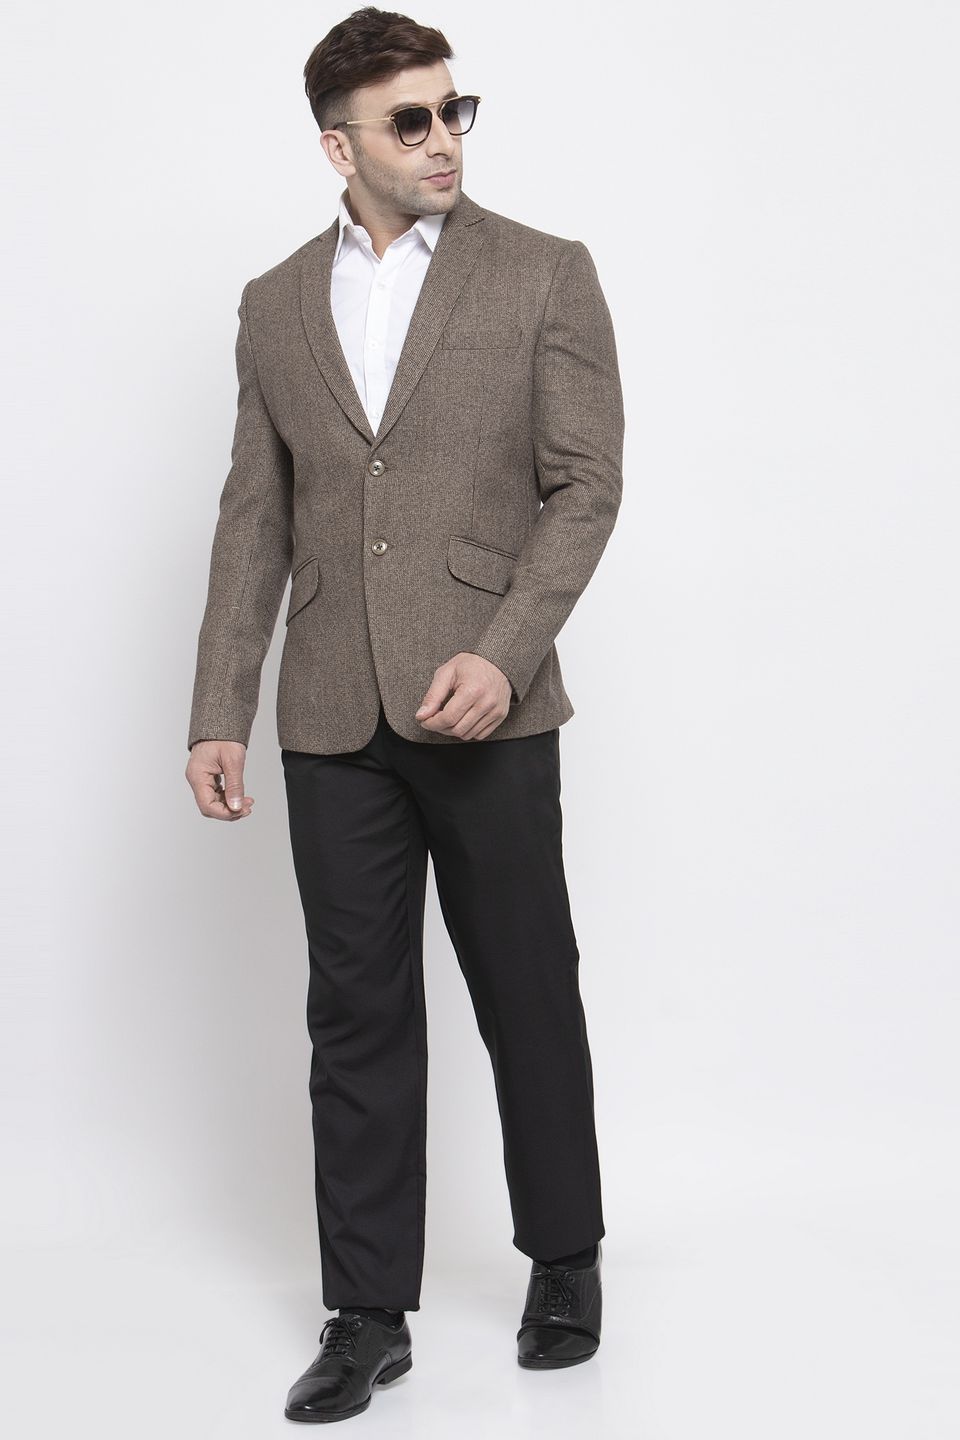 WINTAGE Men's Tweed Wool Casual and Festive Blazer Coat Jacket:Brown